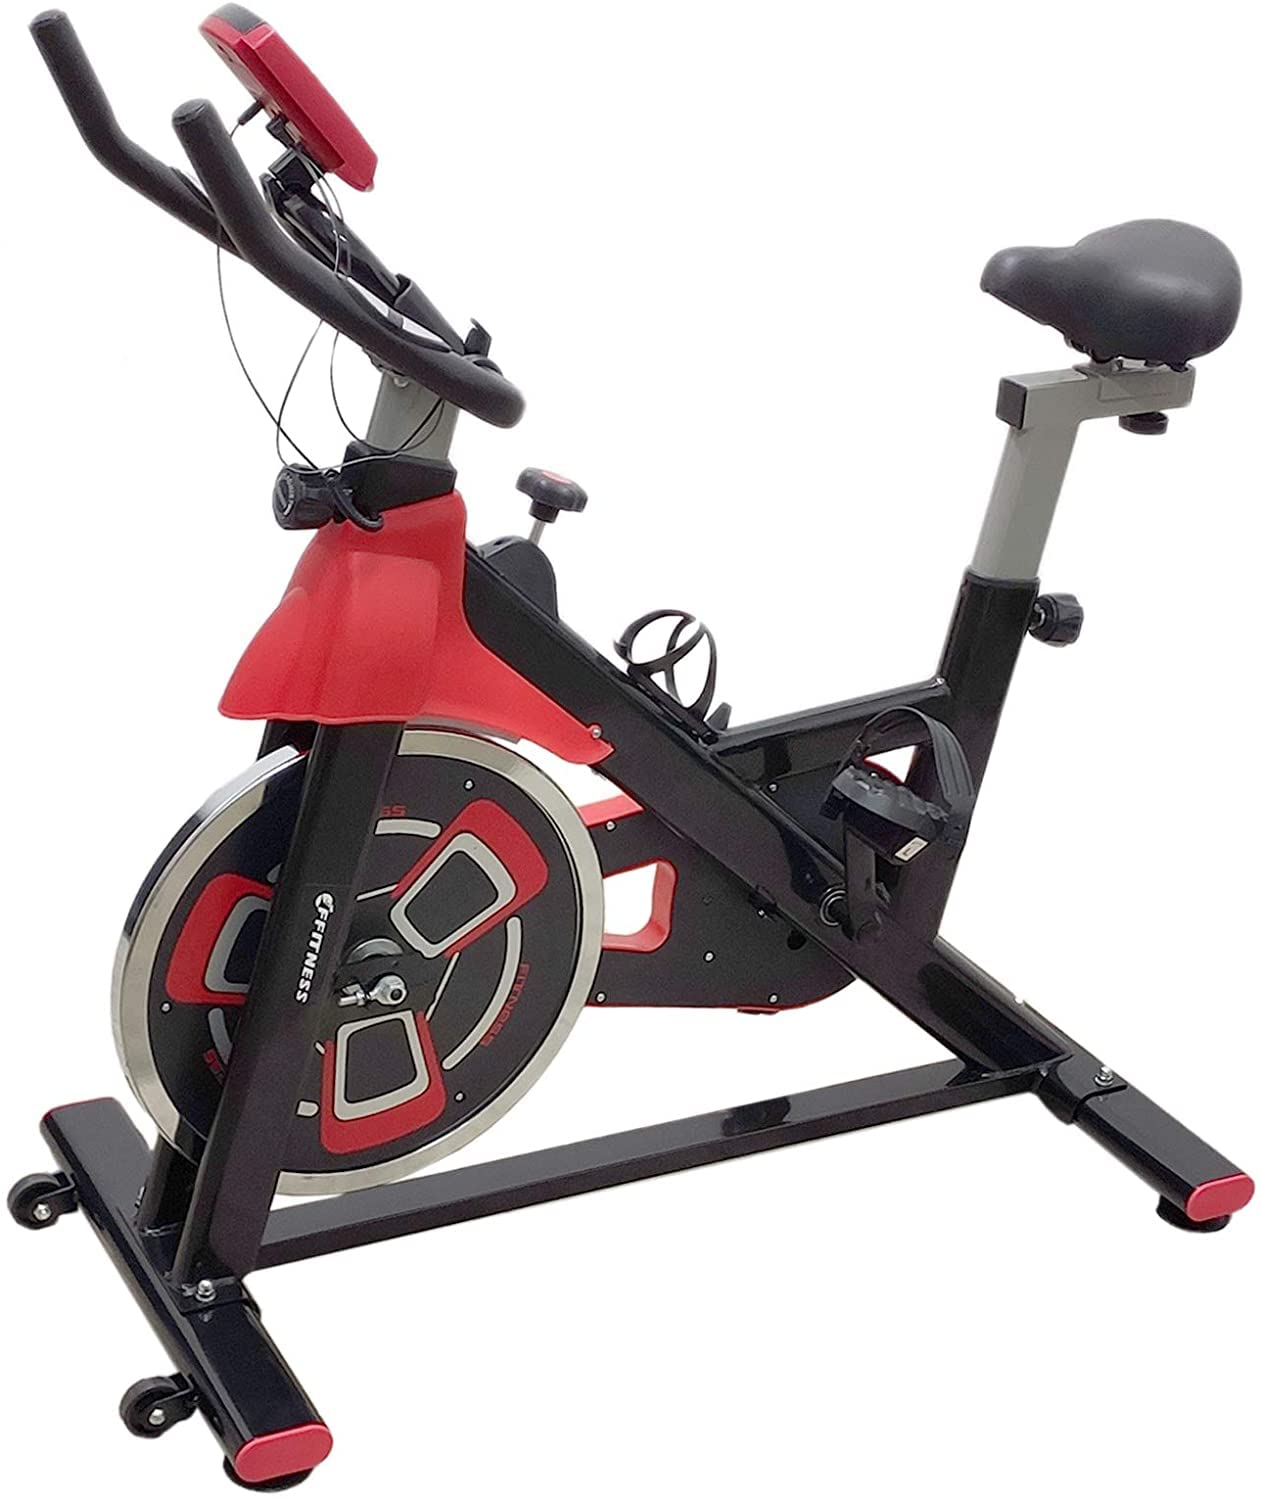 FFitness Indoor Spinning Bike Cycling Fahrrad für das Training zu Hause mit Filzpad, Cardio und Schwungrad 13 kg